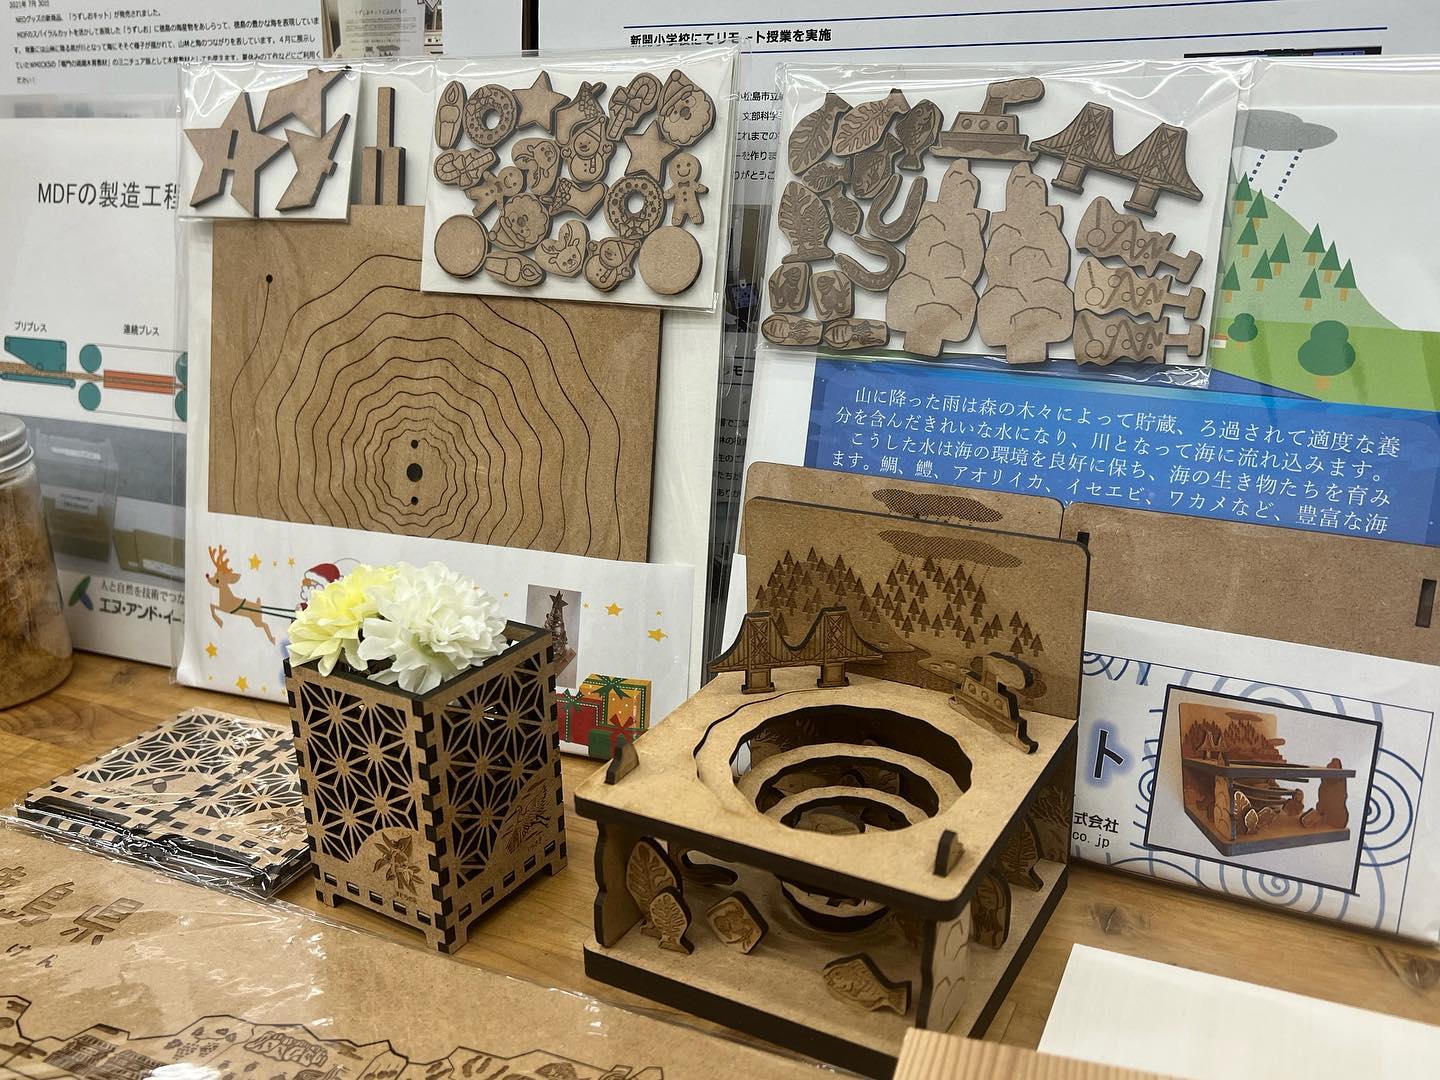 徳島産のMDF 日新商事さんの木質チップからできる木質ボード